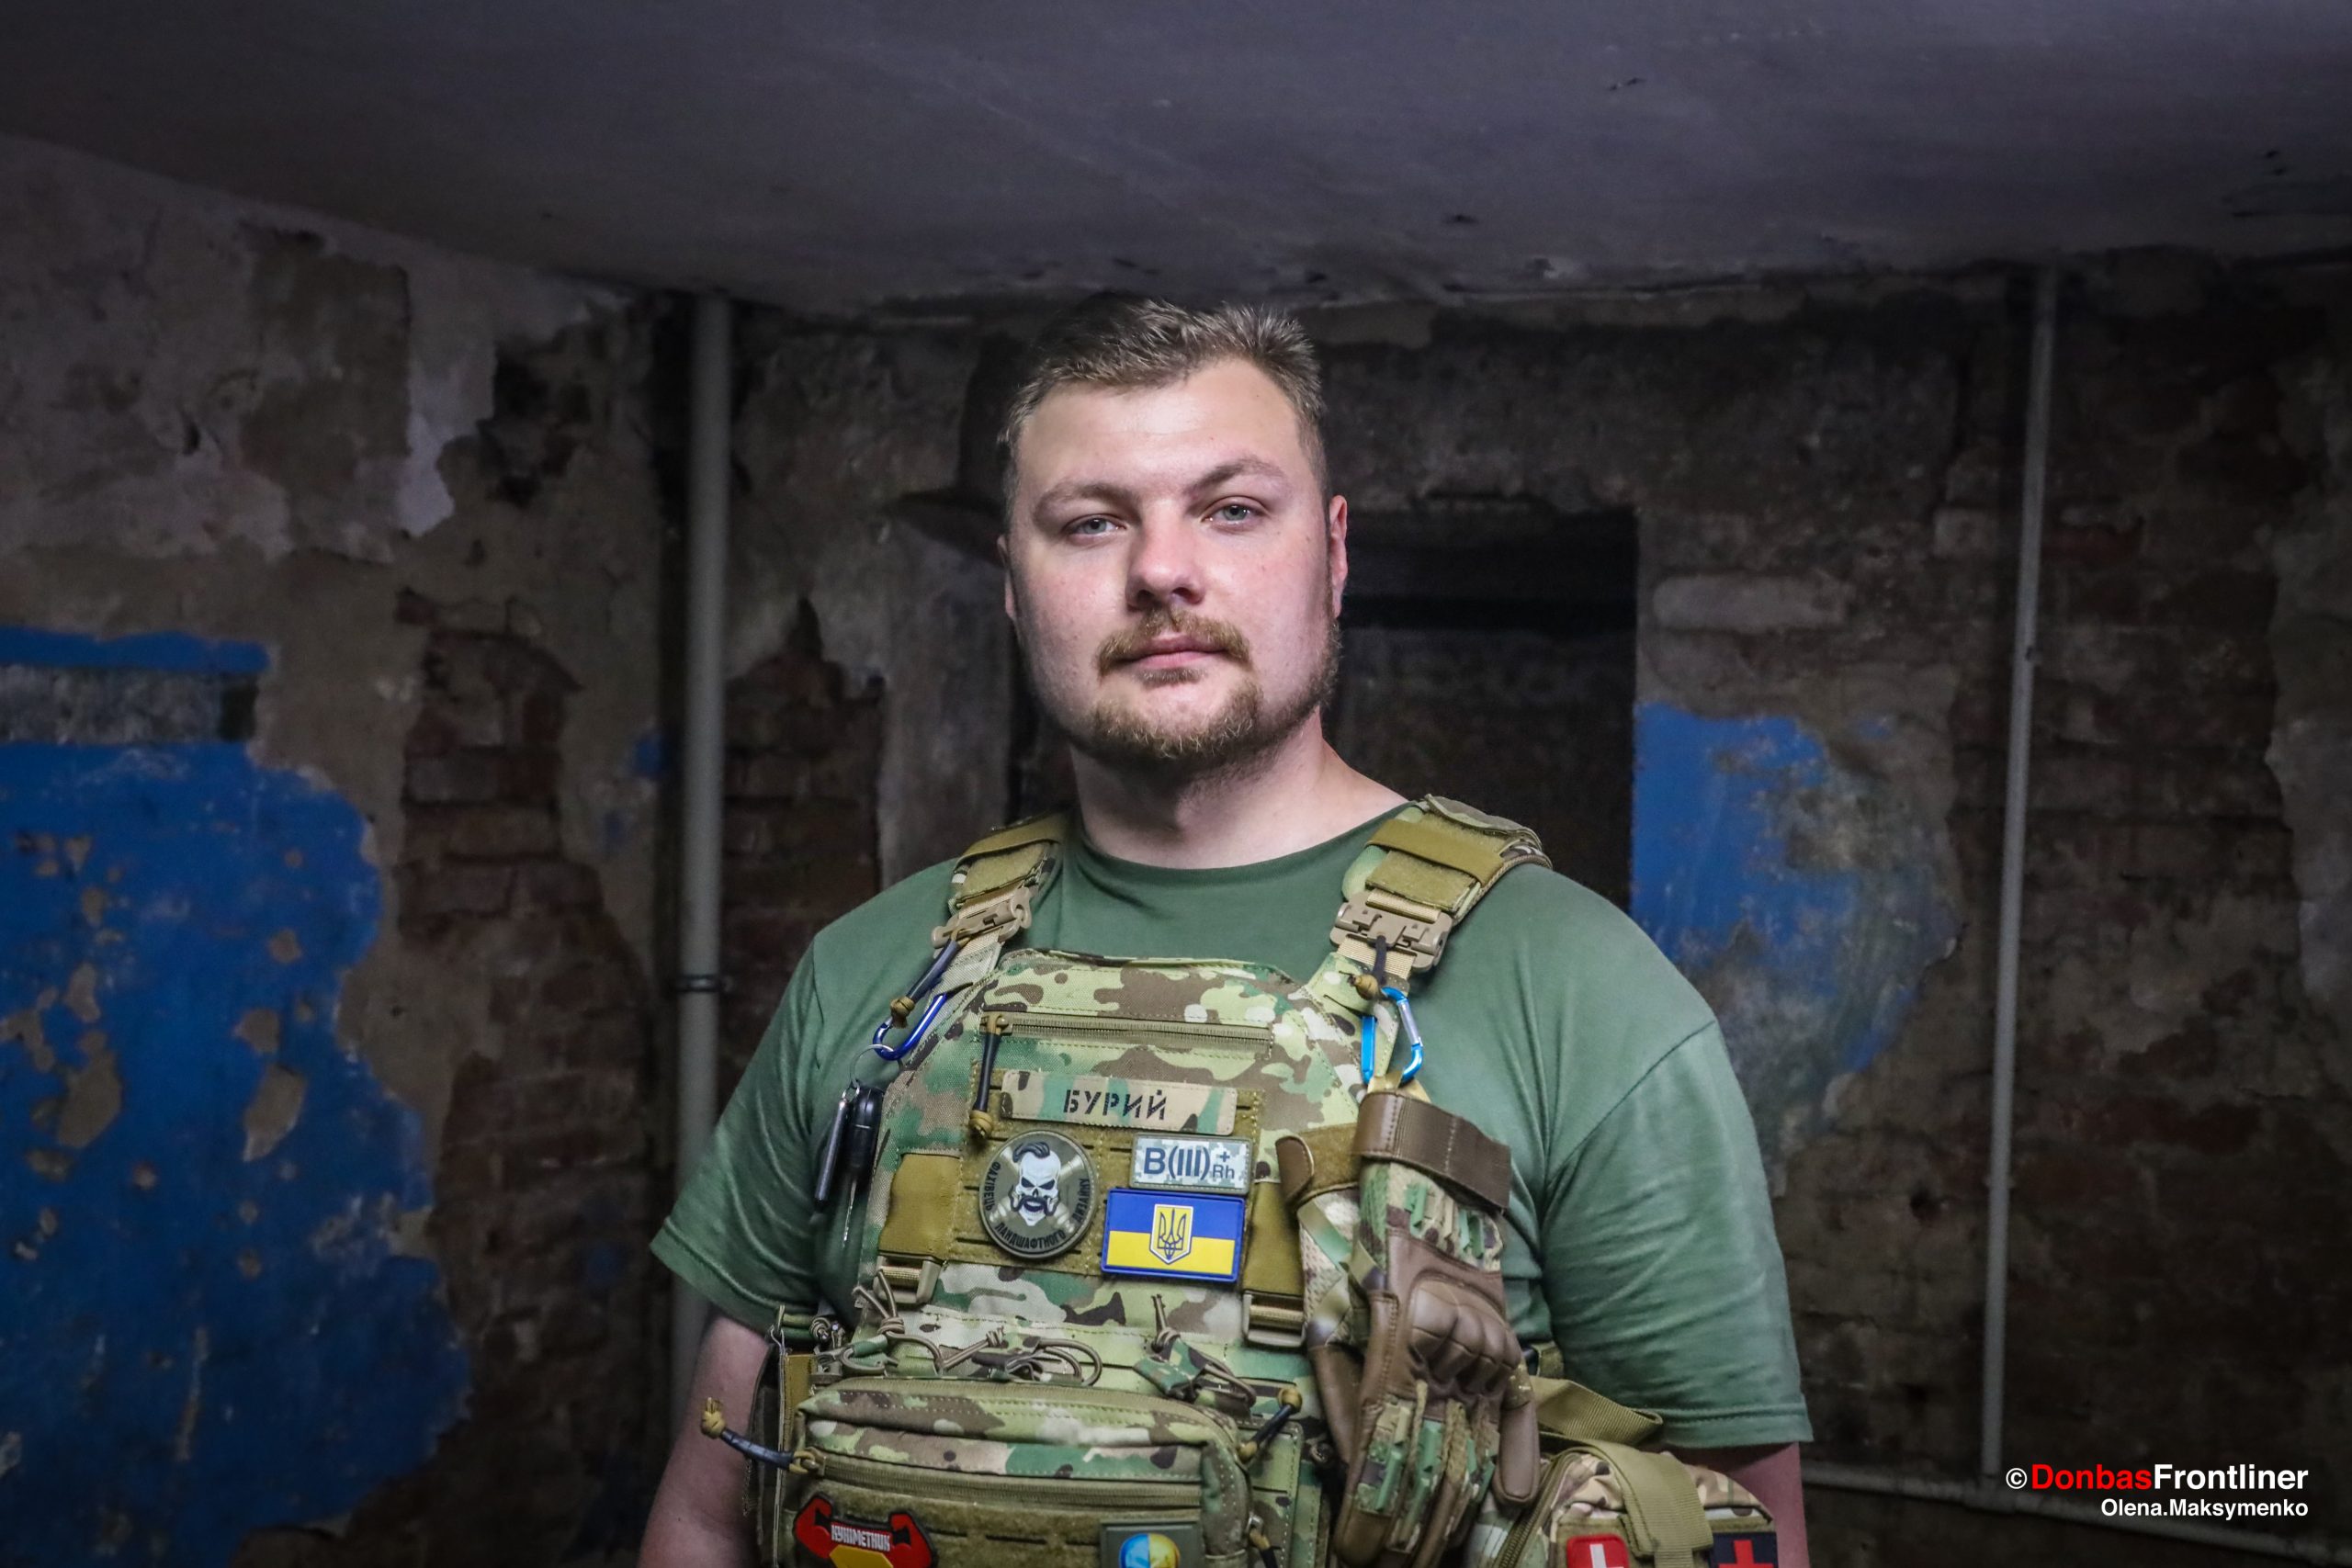 Donbas Frontliner / Командир «Бурий»